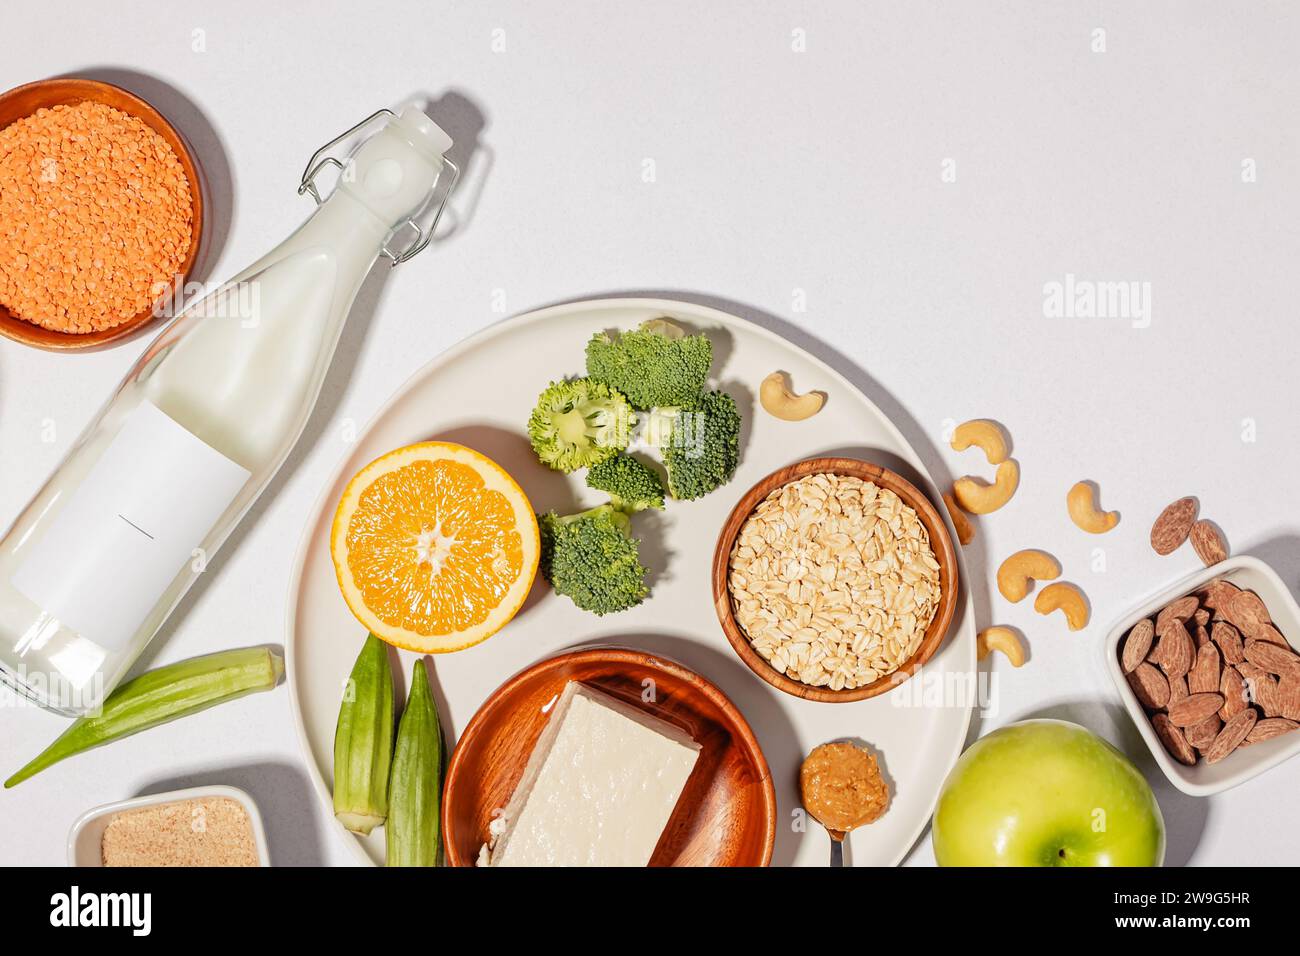 Gesunde pflanzliche Nahrung, Lebensmittel zur Senkung des Cholesterins, Portfolio-Diät-Produkte, Top View Stockfoto